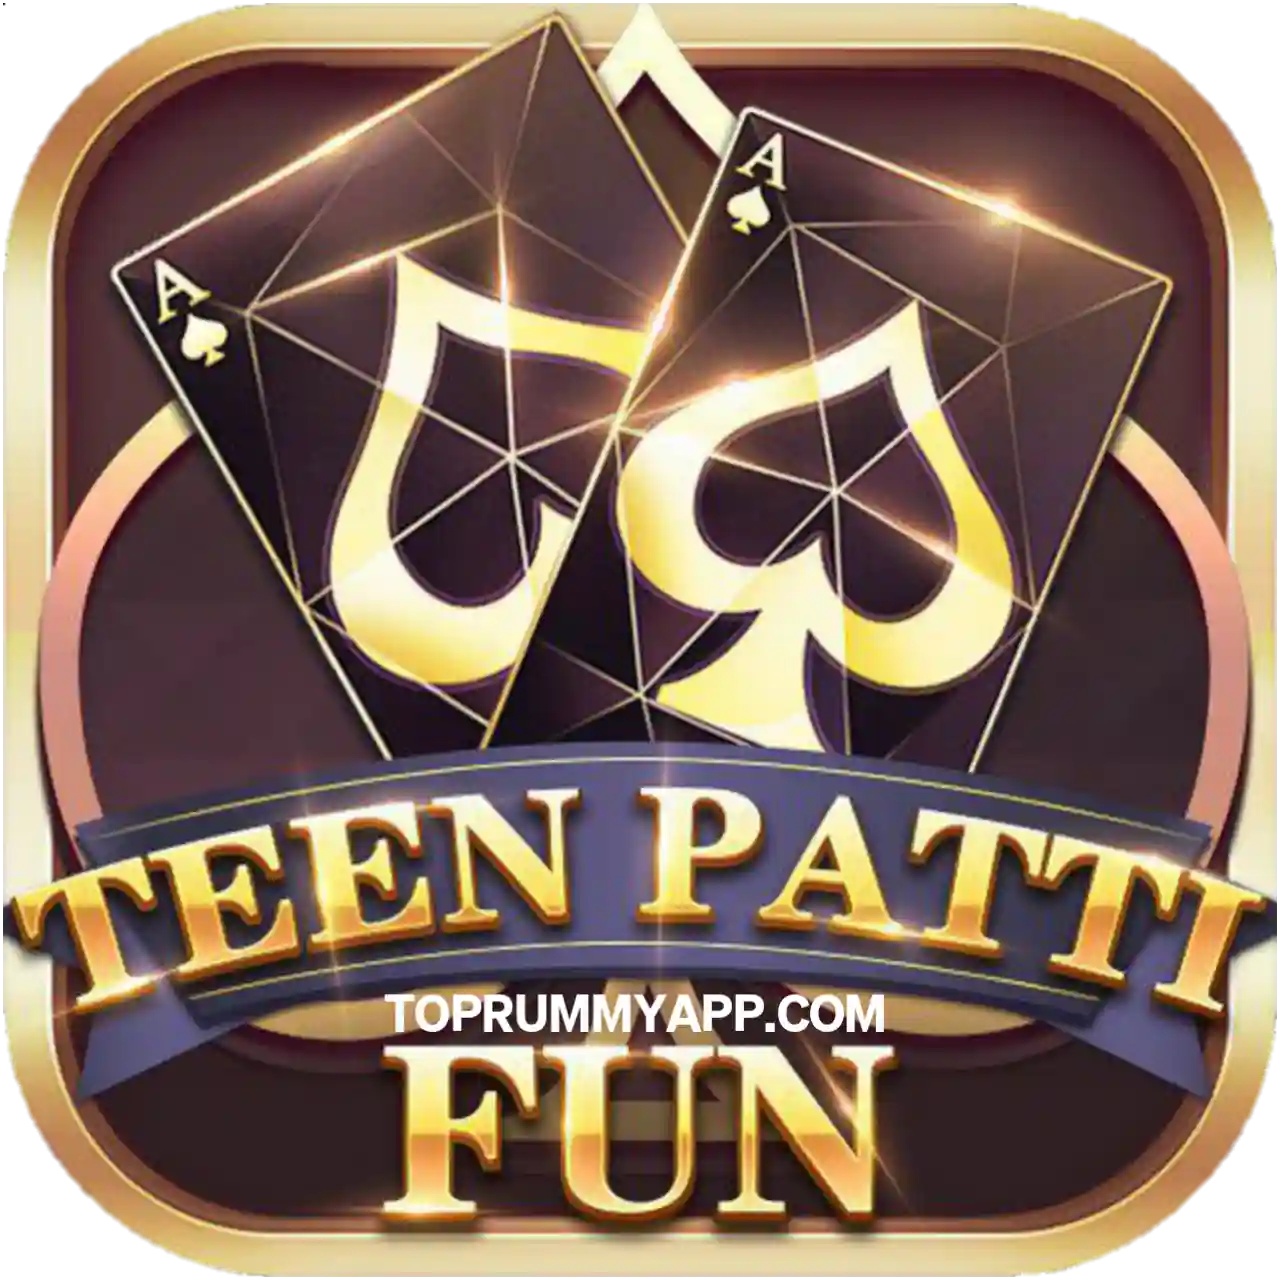 Teen Patti Fun App Download All Teen Patti App List ₹41 Bonus